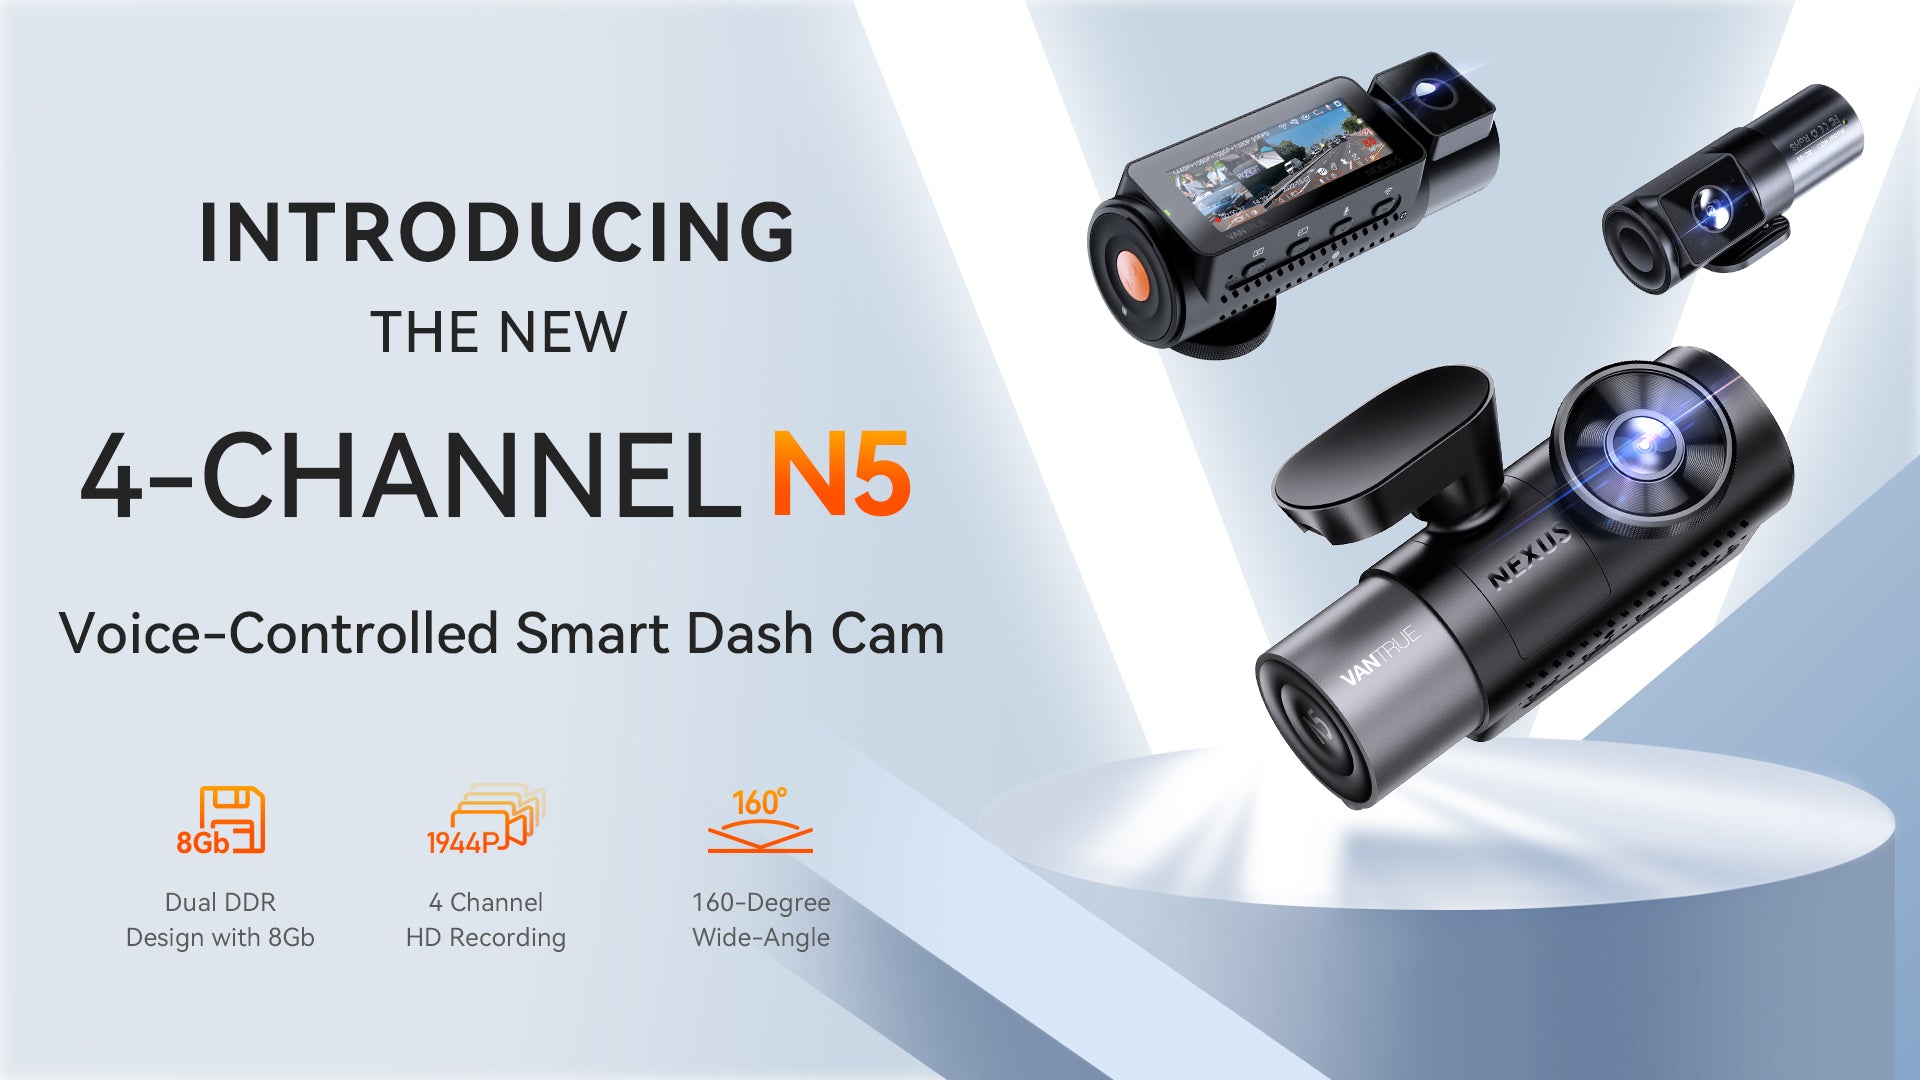 Dash Cam with Bluetooth – Vantrue